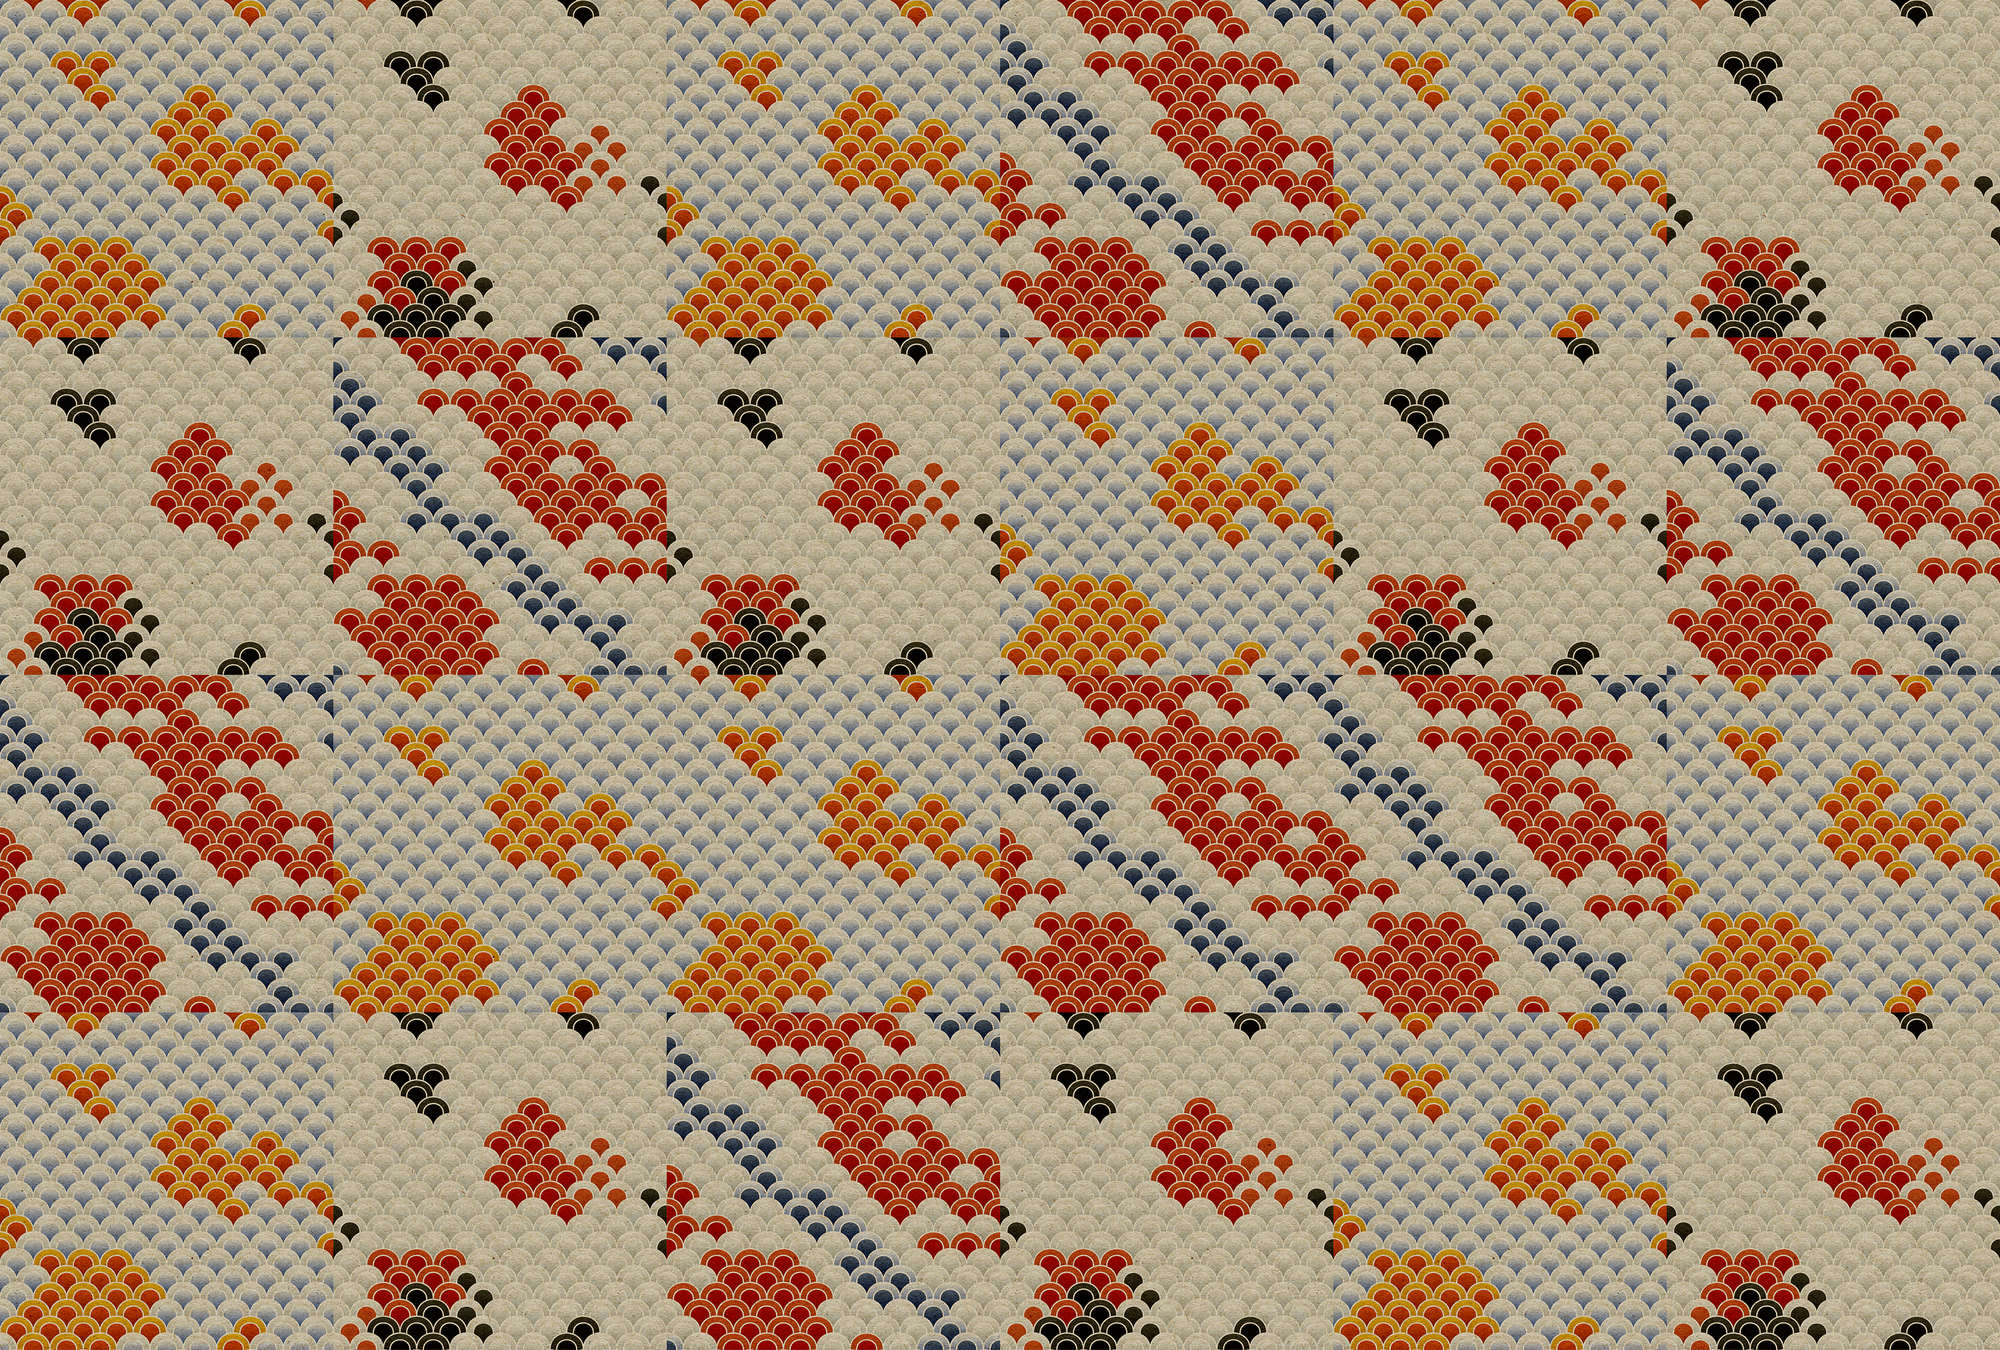             Koi 3 - Abstrakter Koi-Teich als Digitaldruck auf Pappe Struktur – Beige, Orange | Perlmutt Glattvlies
        